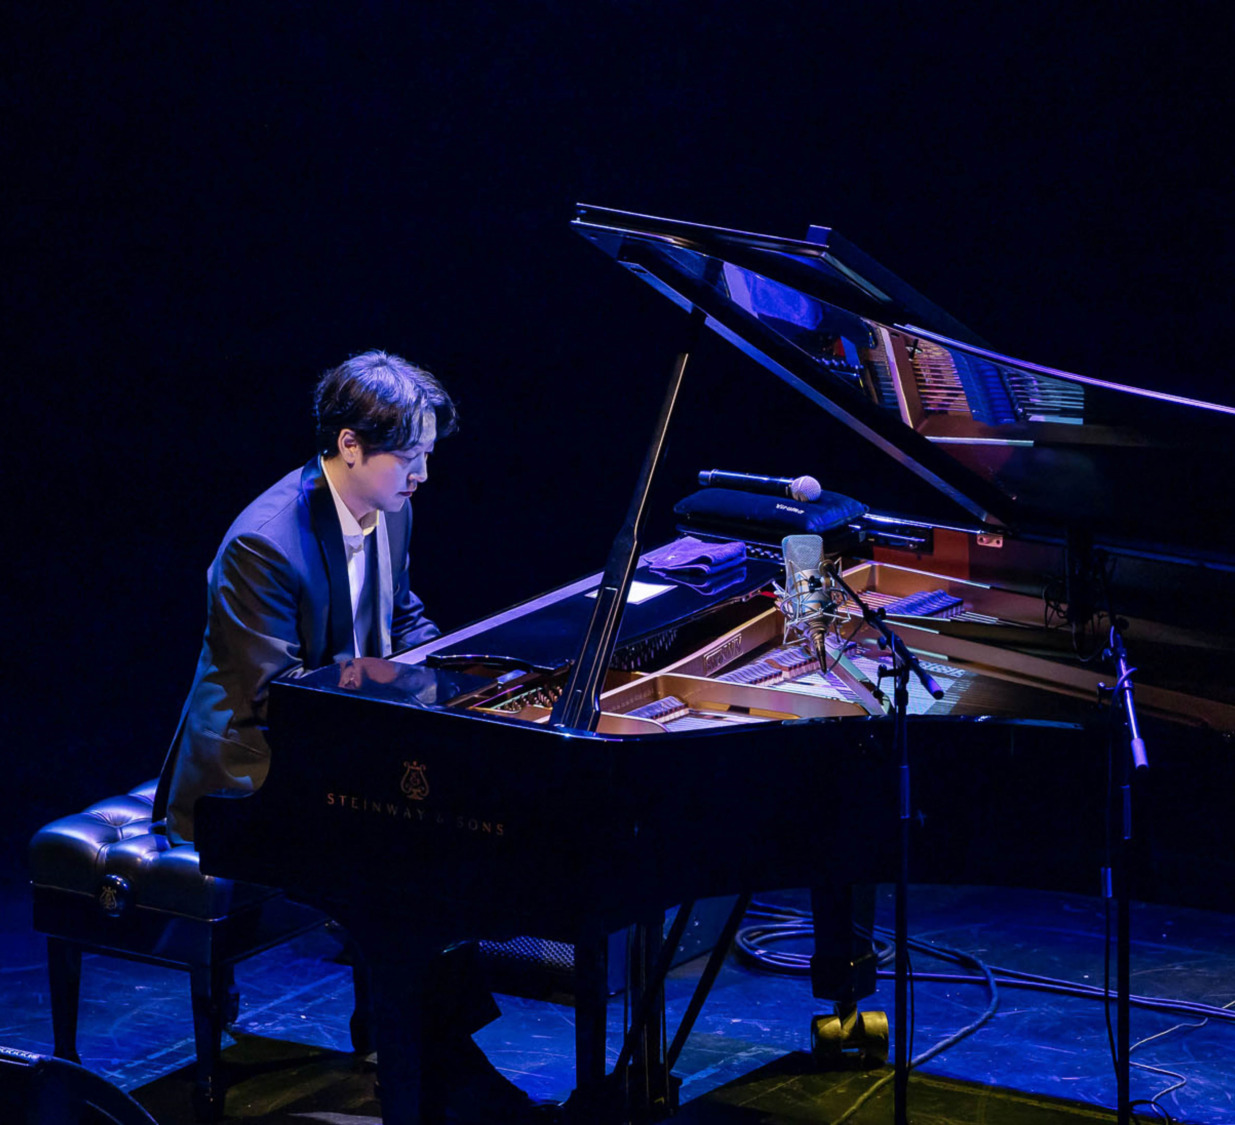 韓國國寶鋼琴家Yiruma李閏珉 特別喜歡台灣的氣候和水果